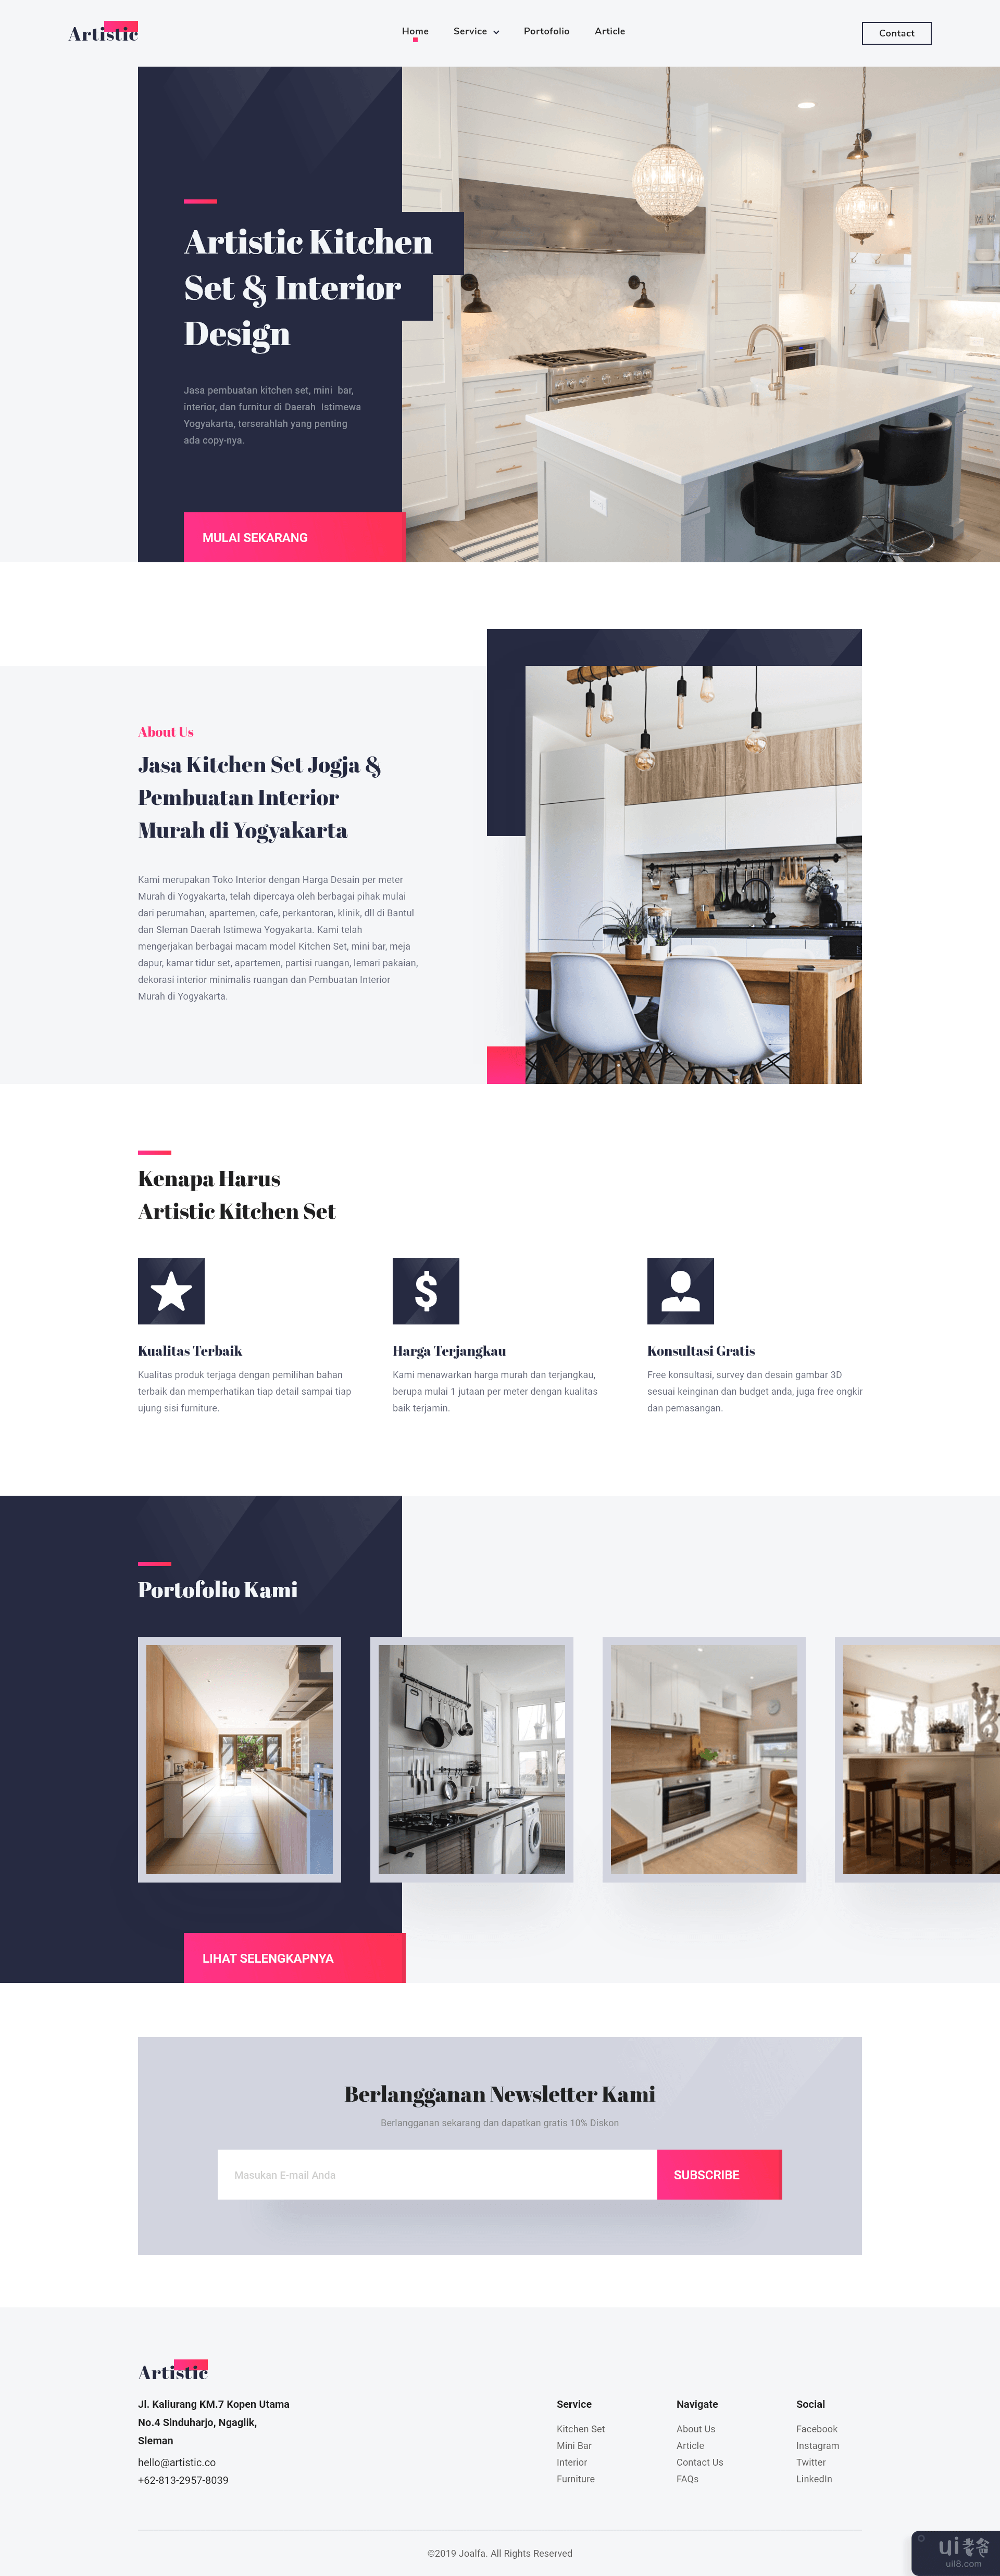 室内家具网站(Interior Furniture Website)插图